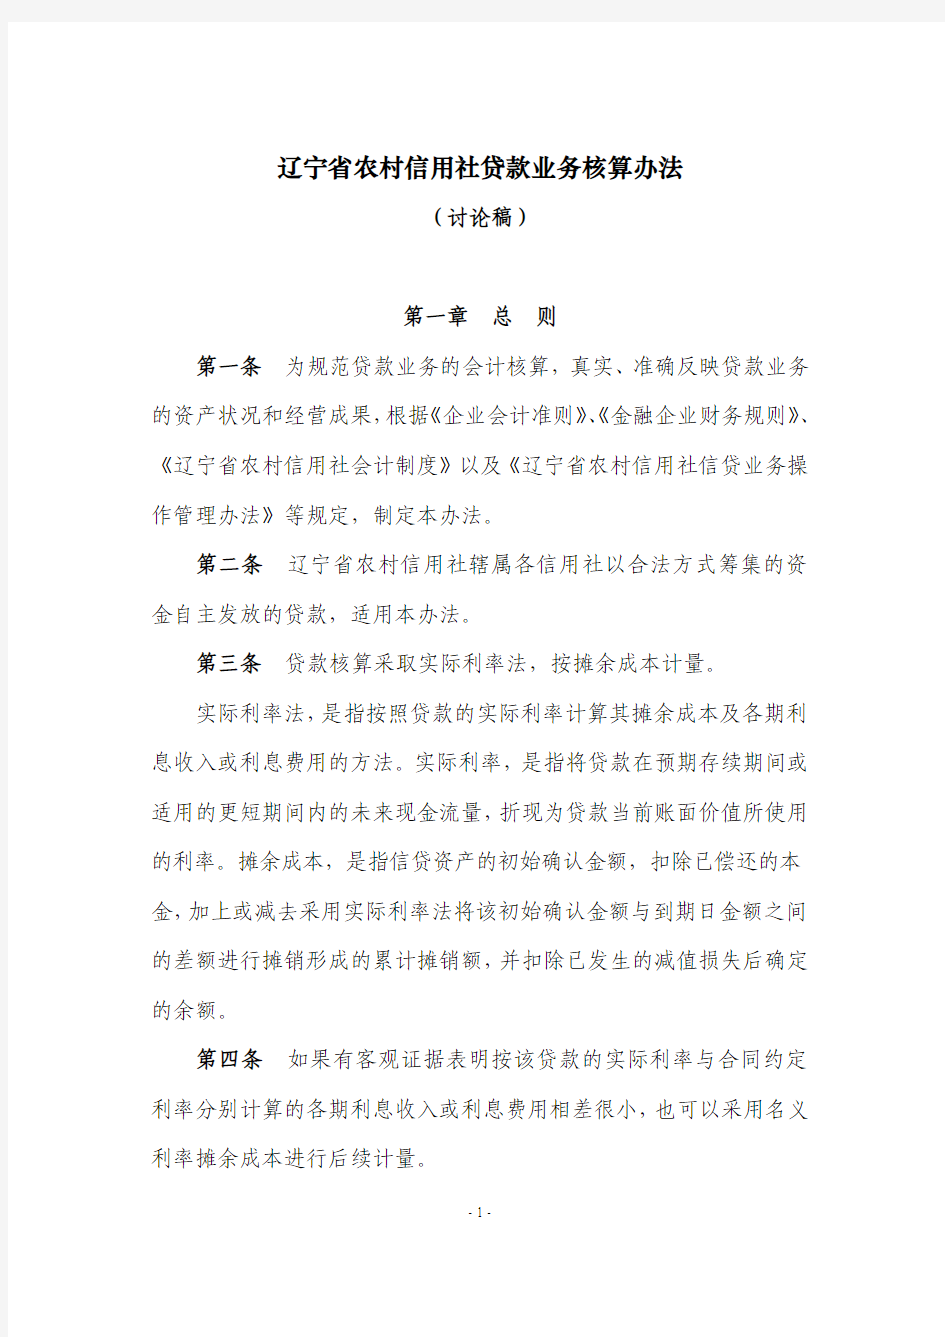 2-辽宁省农村信用社贷款业务核算办法(讨论稿)